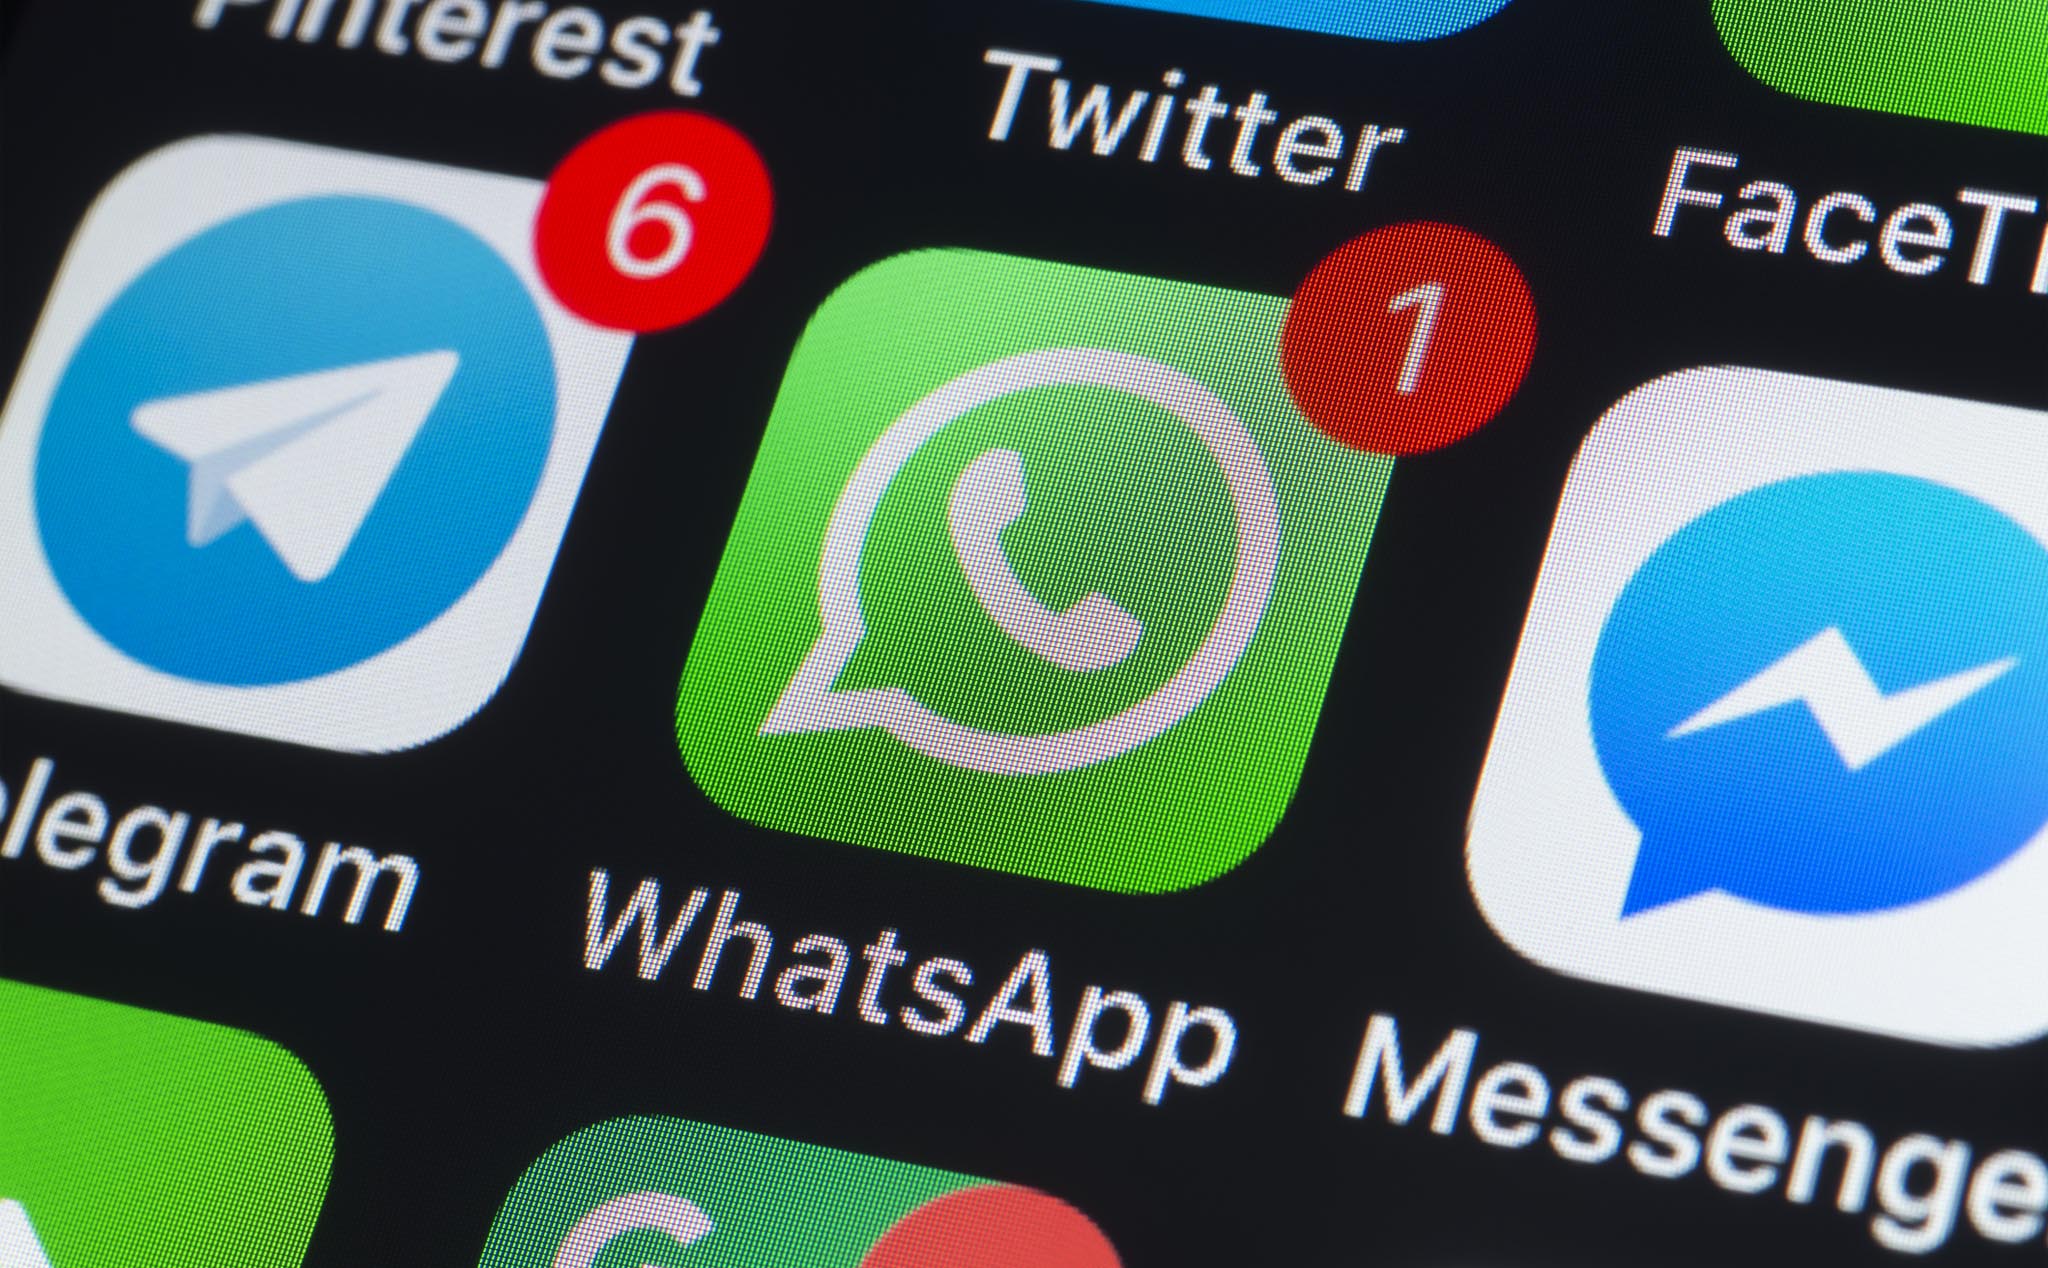 WhatsApp chuẩn bị ngừng hỗ trợ smartphone chạy iOS 7 và Android Gingerbread trở về trước